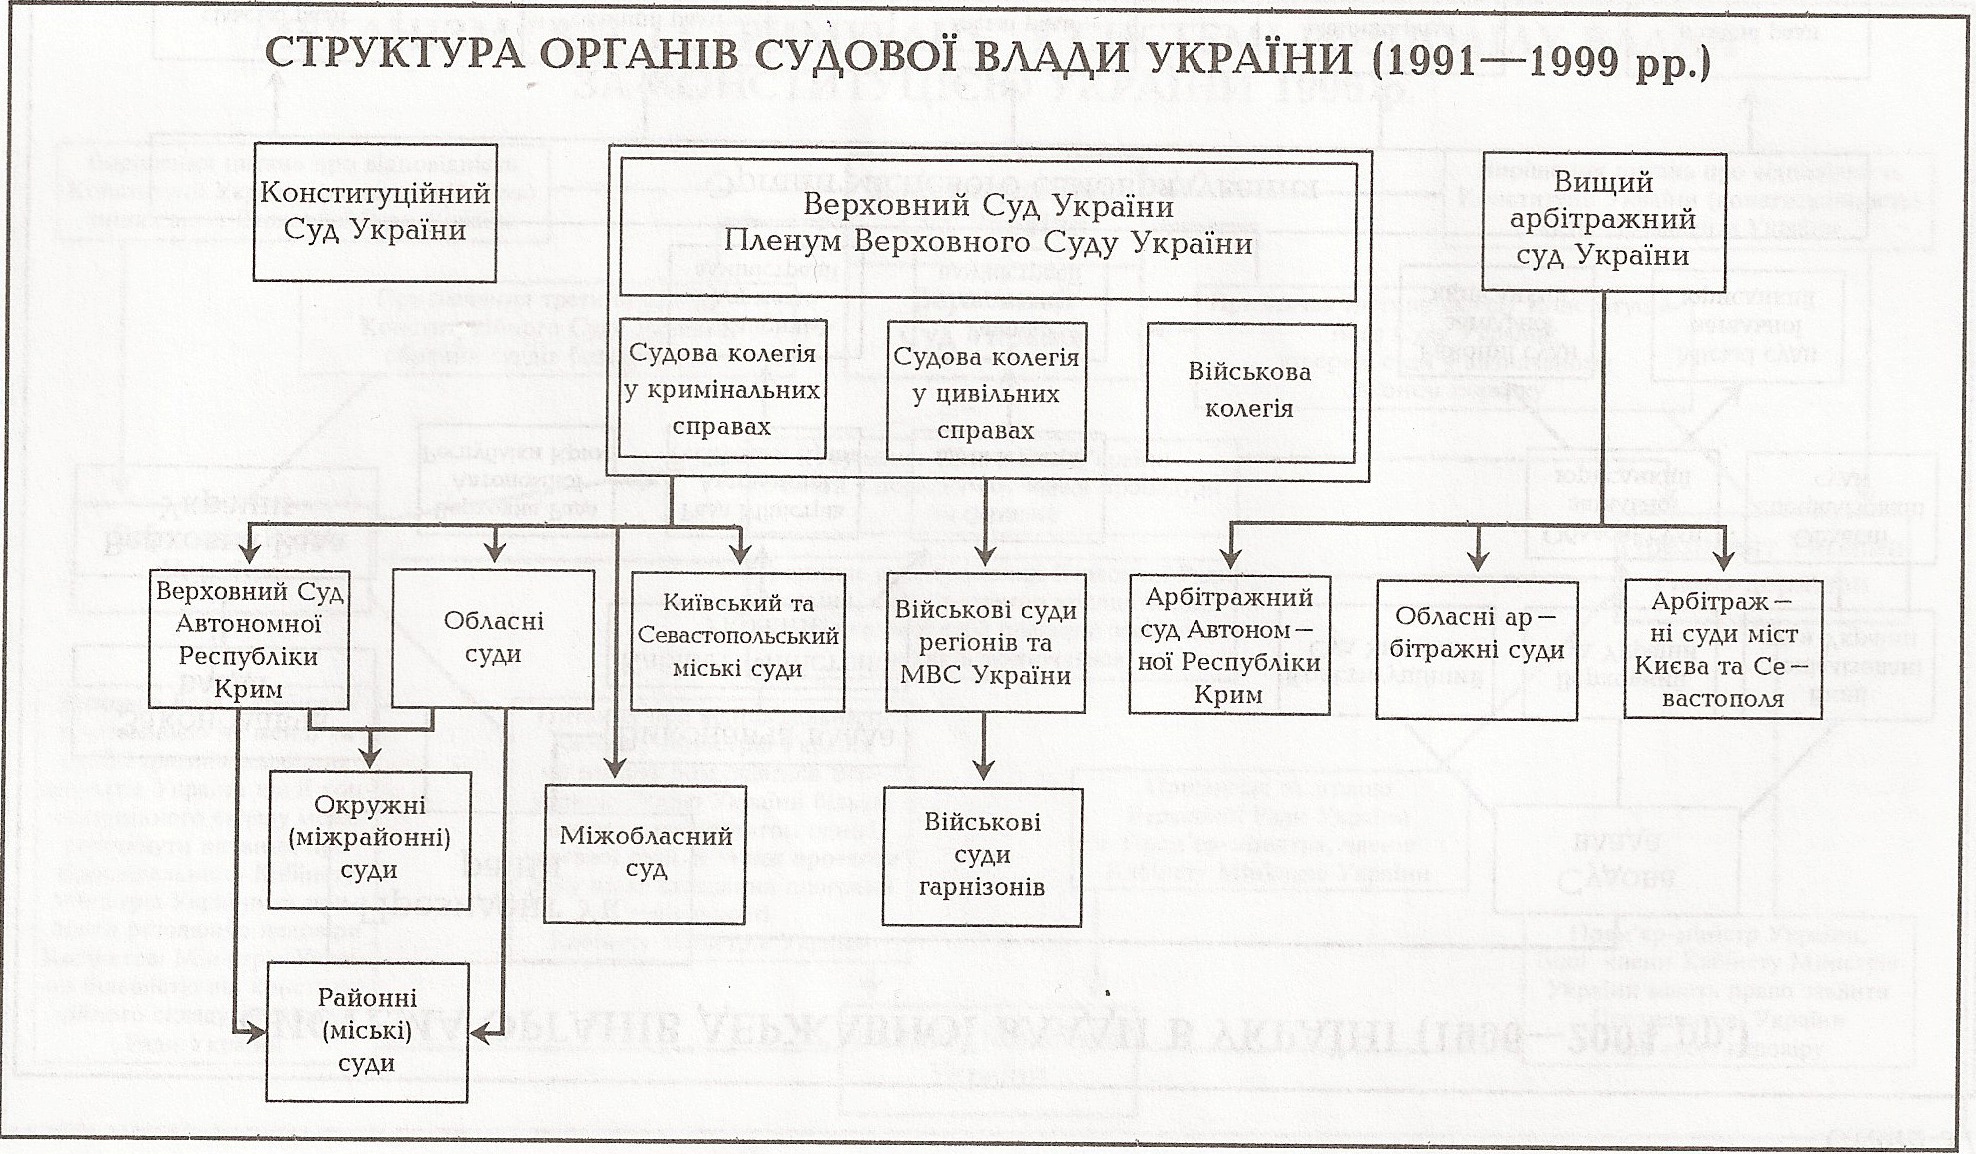 Таблиця: Структура Органів судової влади України (1991 - 1999 рр.)